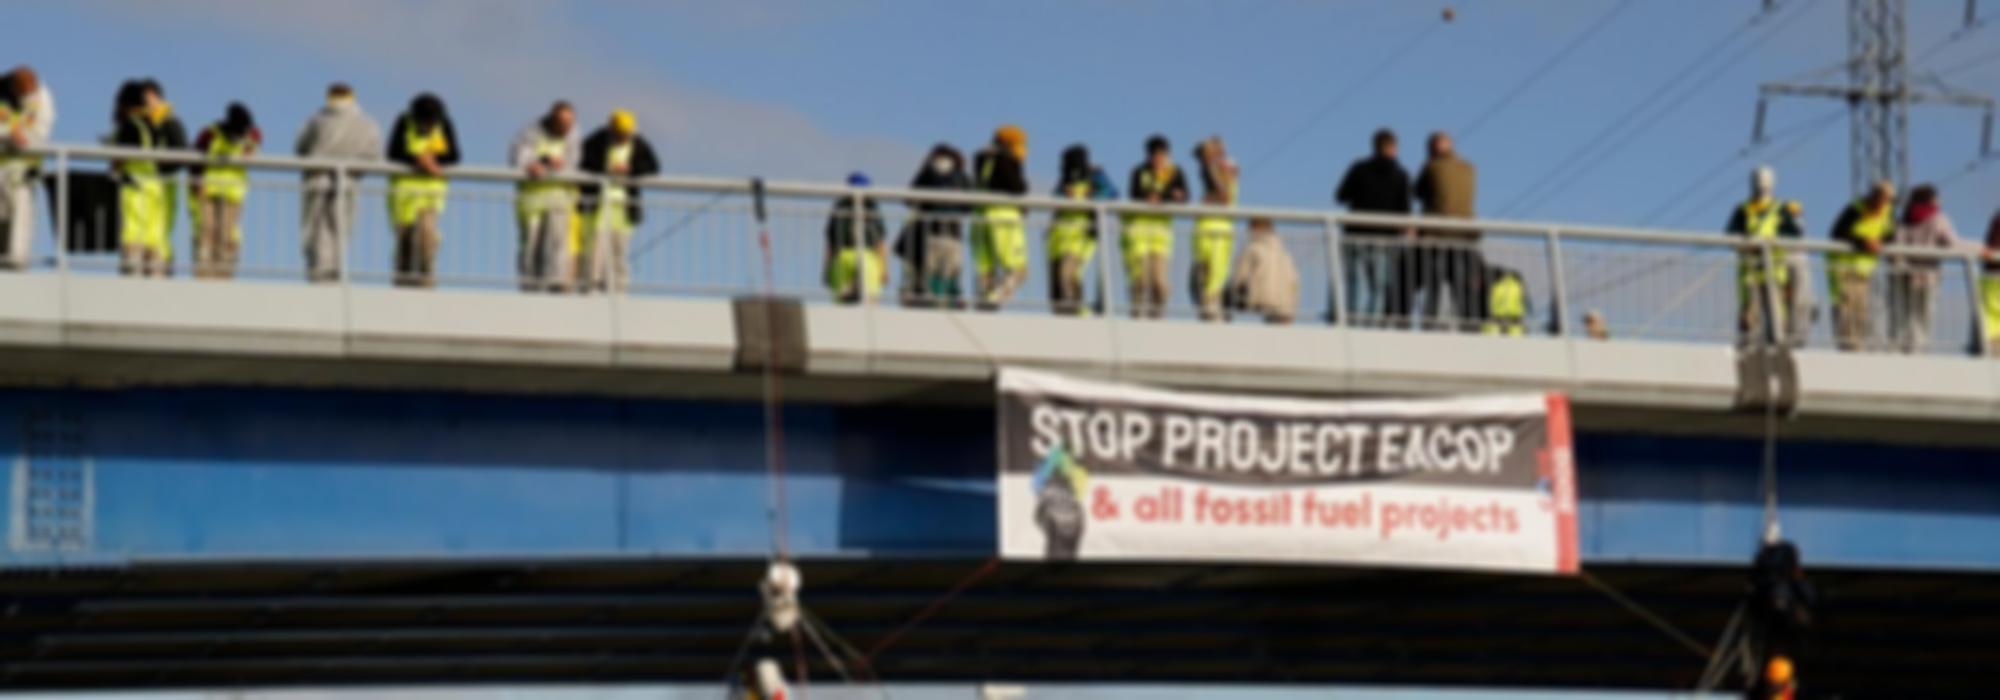 Activisten op een brug met spandoek 'stop project eacop & all fossil fuel projects'